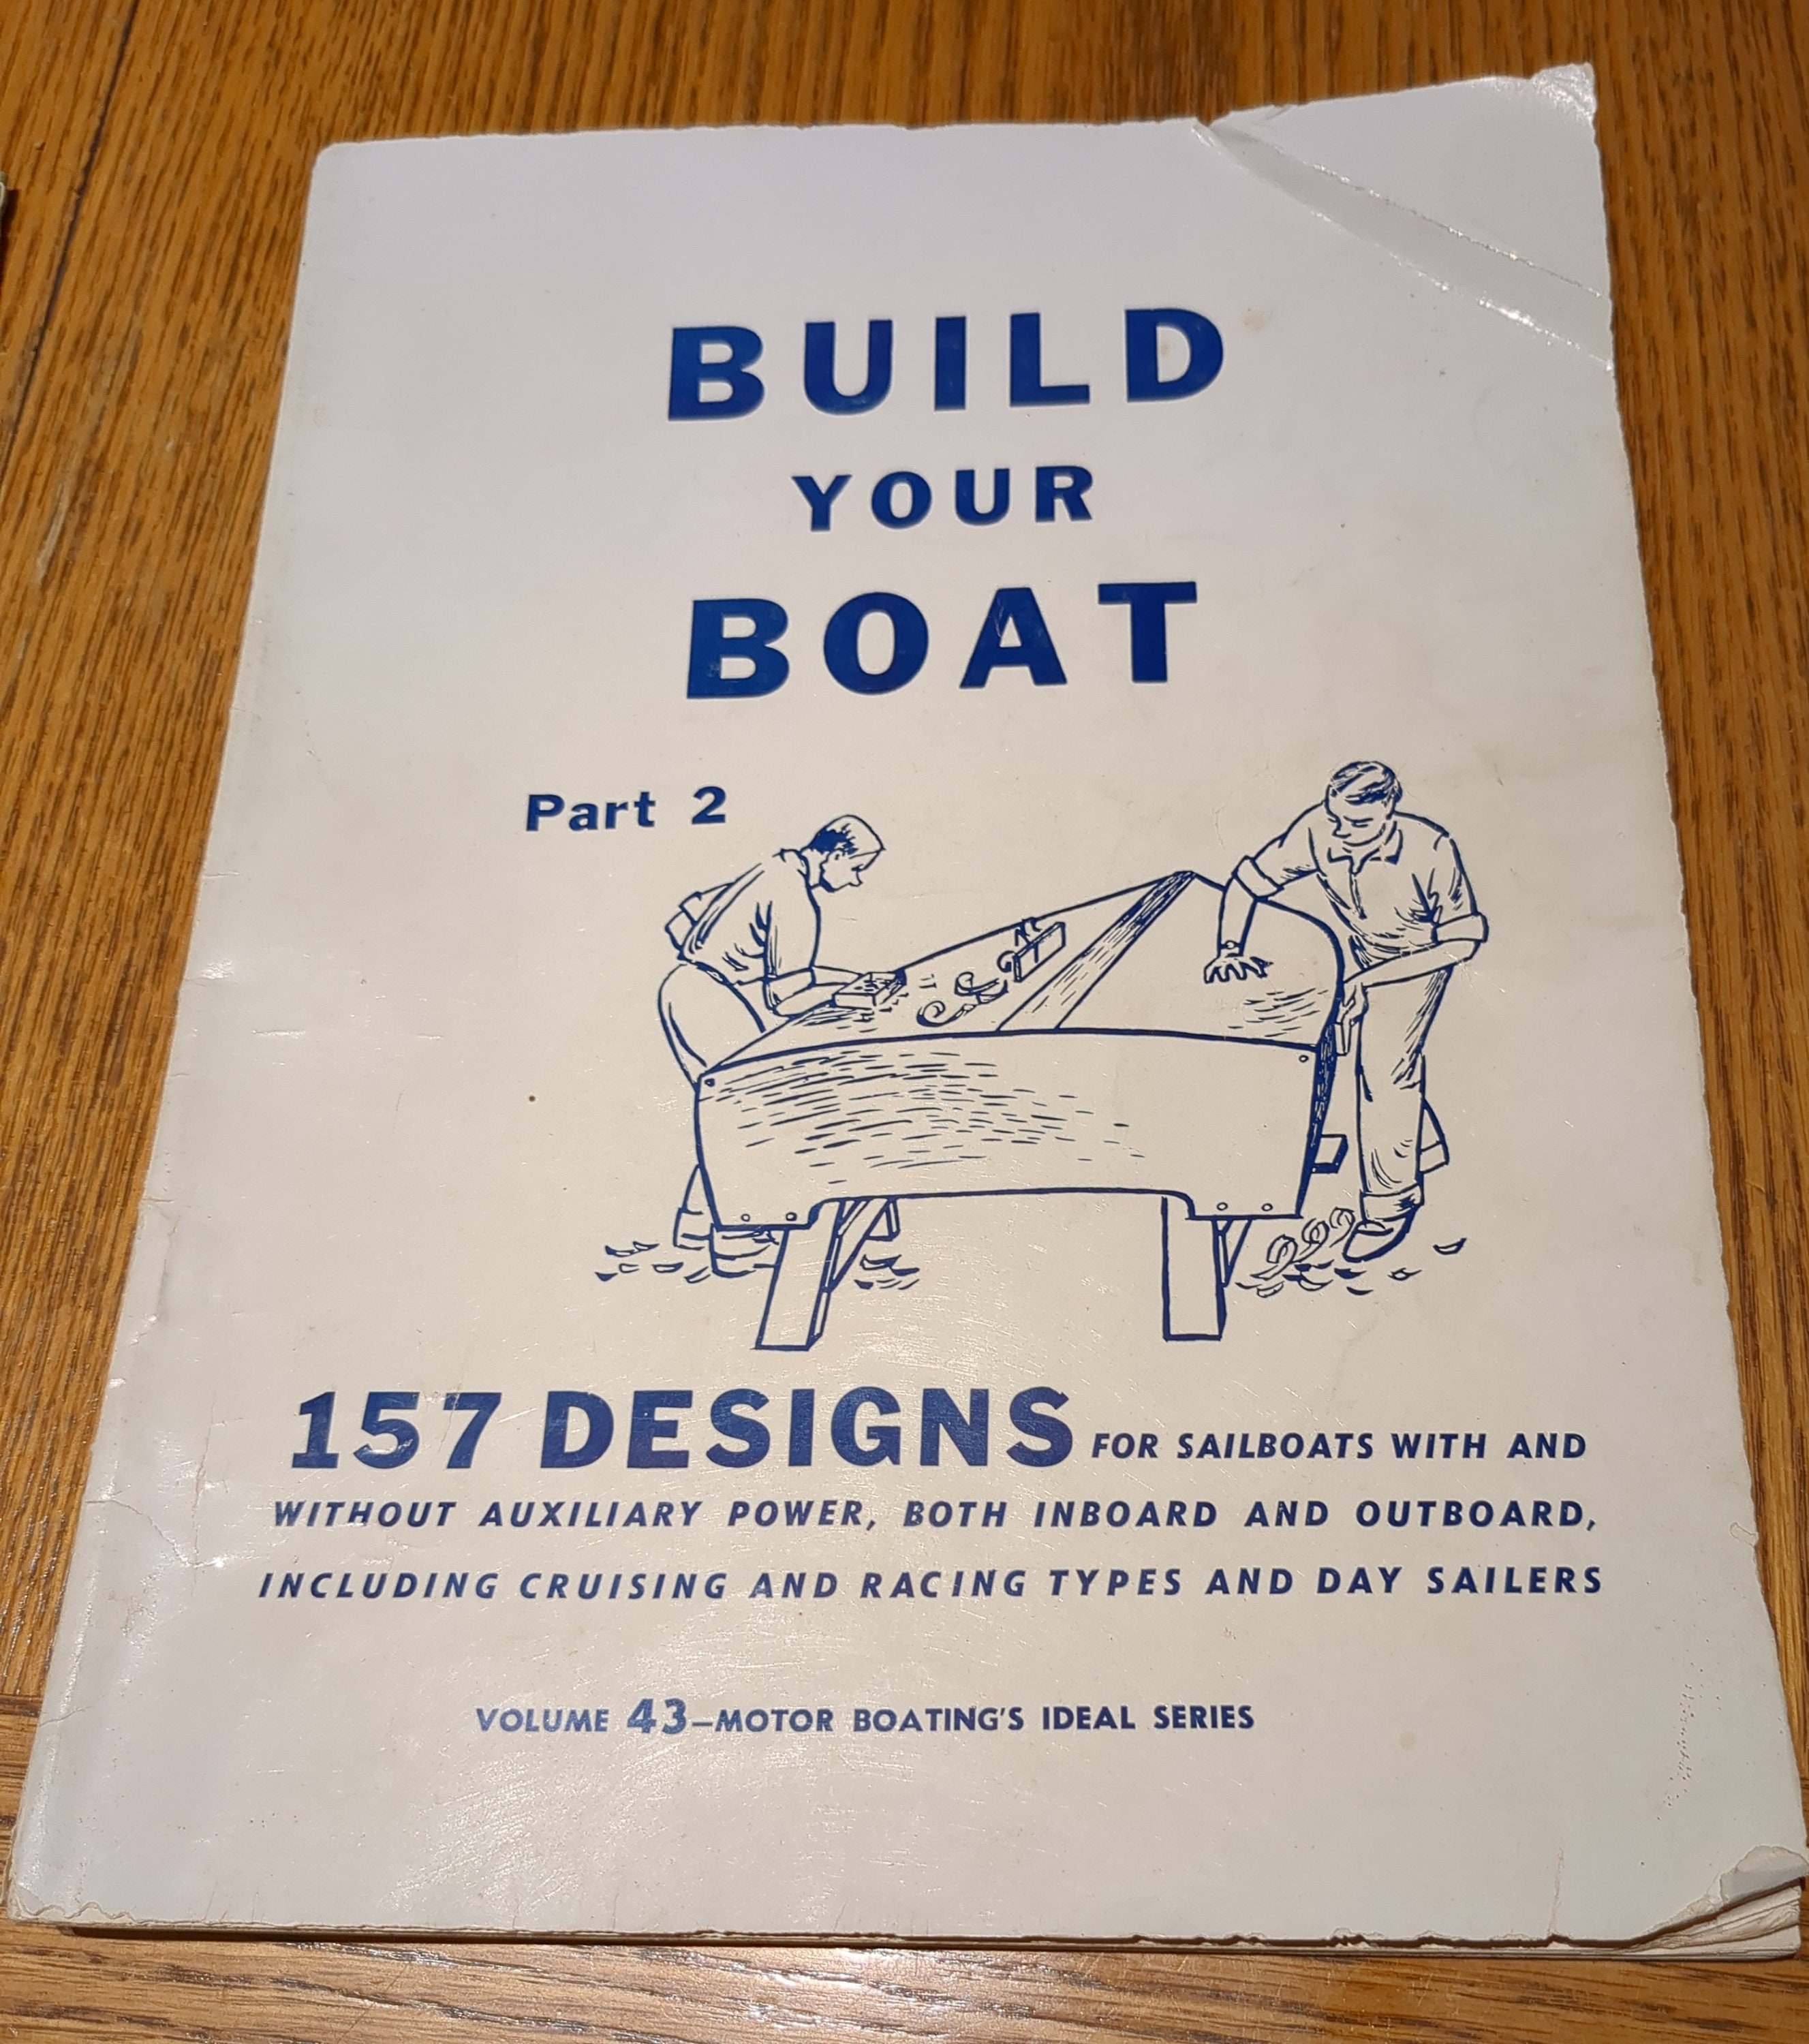 Vintage Boat Plans image image